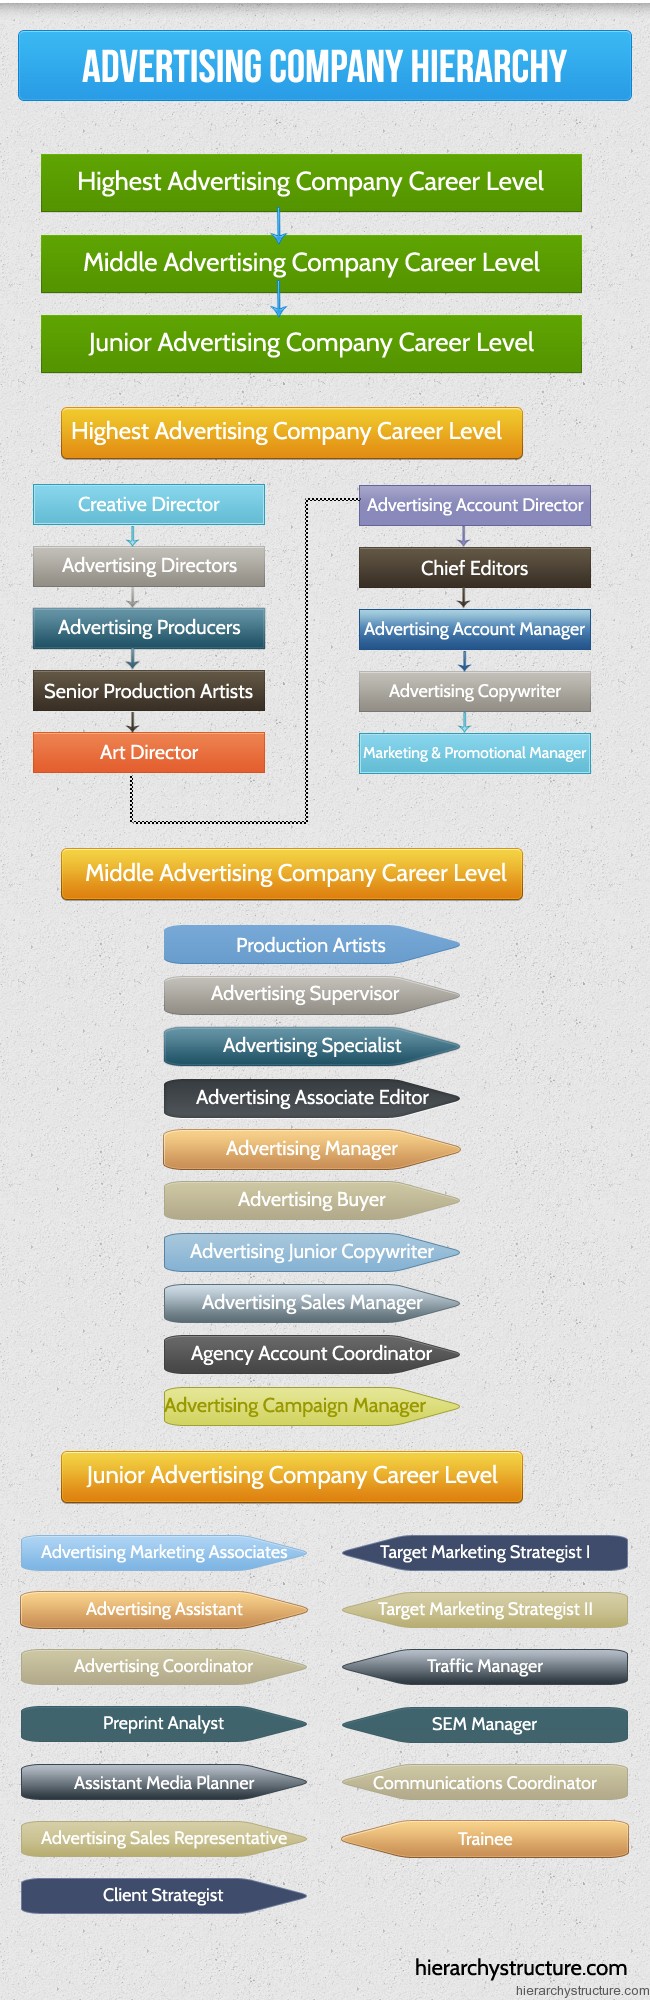 Advertising Company Hierarchy